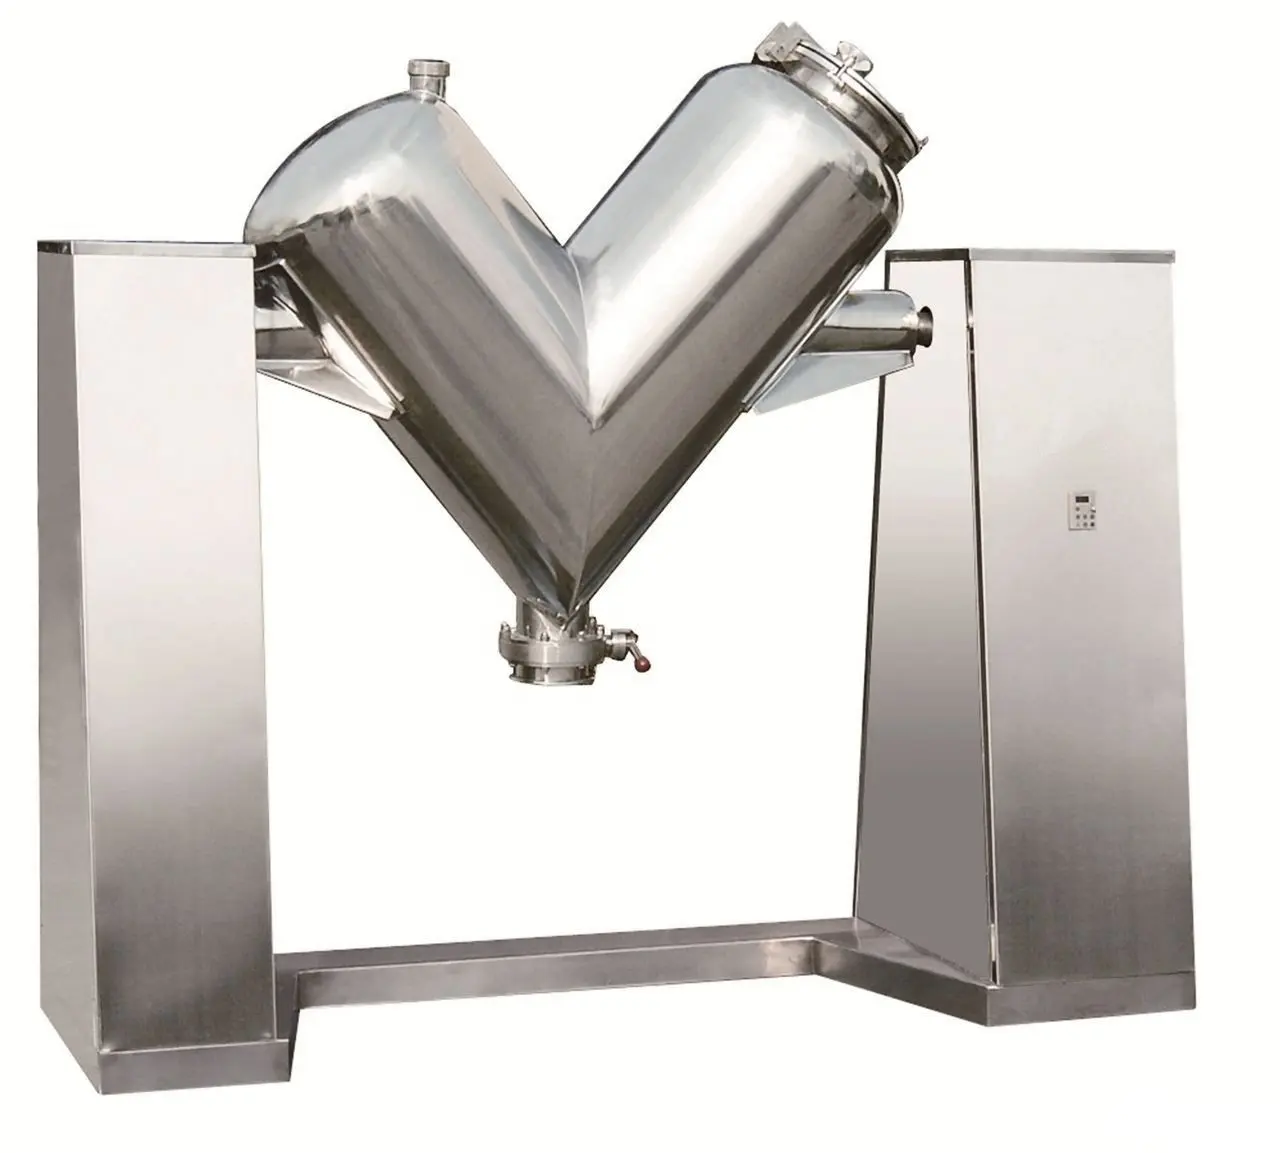 Máquina mezcladora de polvo de 500L, licuadora tipo V, mezcladora de polvo seco industrial para la industria alimentaria y química